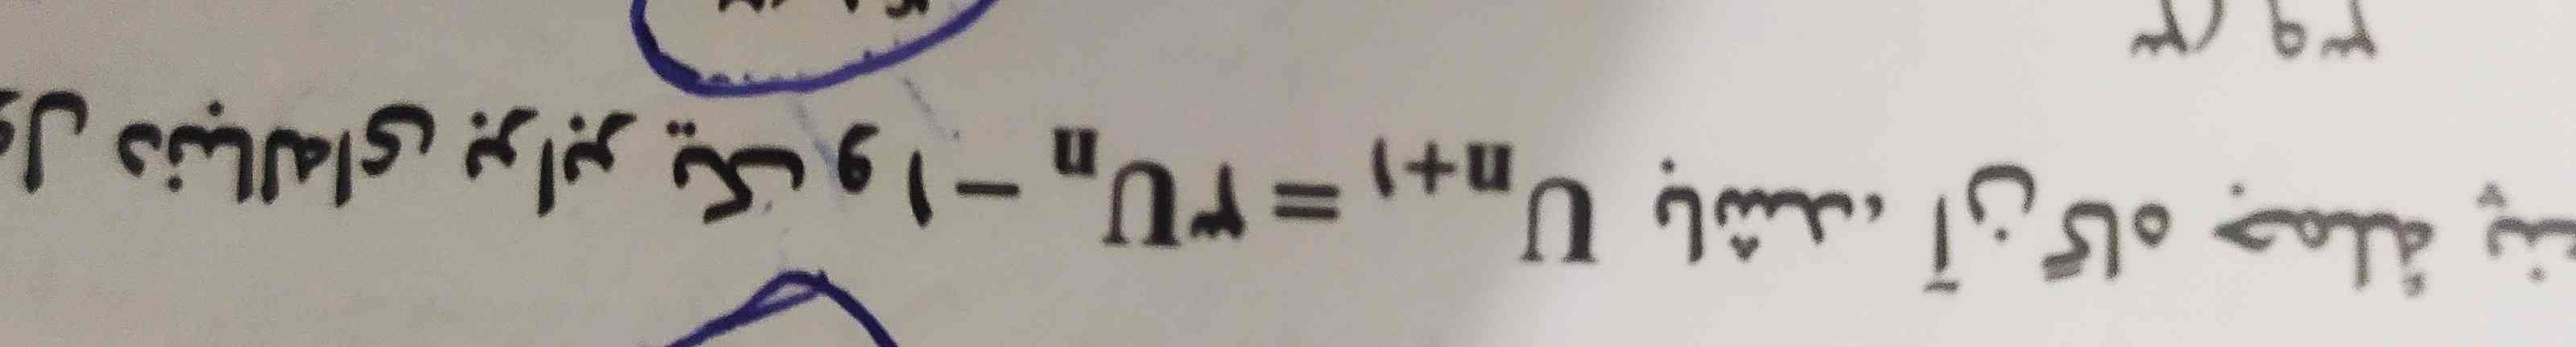 سلام 💕
چرا تو این فرمول 👈(Un+1=3Un-1) منفی یک قدر نسبت نیستش ولی تو این فرمول⭐ (Un+1=Un+2)  ،« عدد دو » قدر نسبت هست! و روش حلش هم با هم فرق داره؟؟ 
میشه کلا در مورد این دوتا فرمول توضیح بدین 🥺🥺